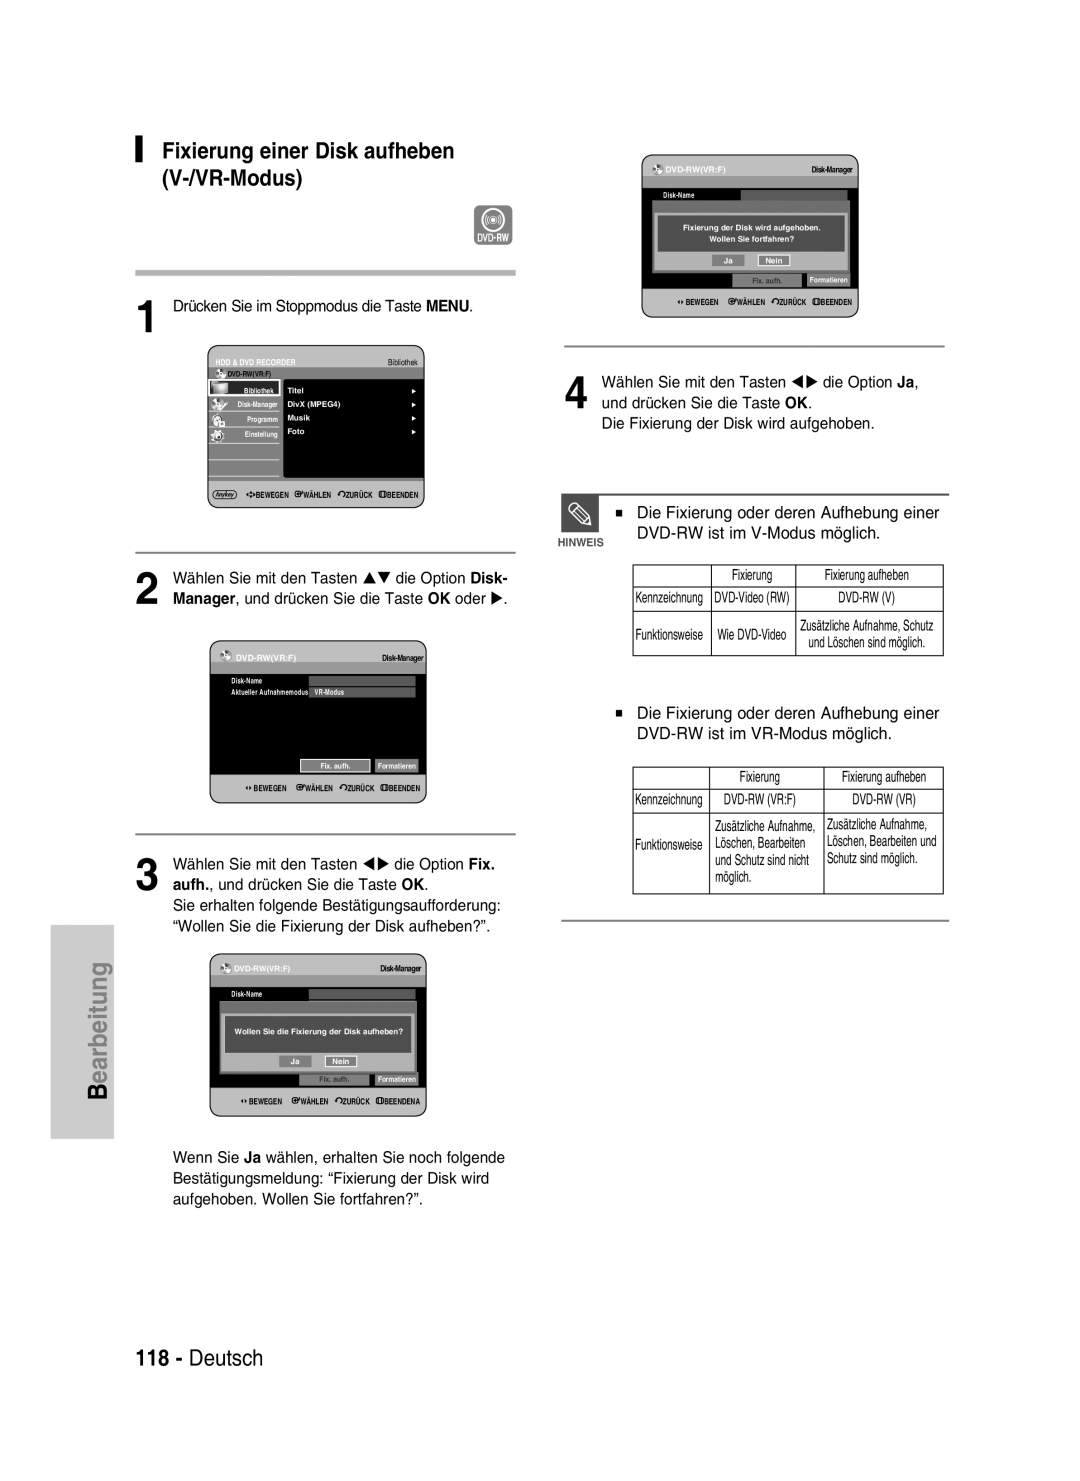 Samsung DVD-HR734/XEG, DVD-HR730/XEC, DVD-HR730/XEB Fixierung einer Disk aufheben V-/VR-Modus, Deutsch, earbeitung, Hinweis 